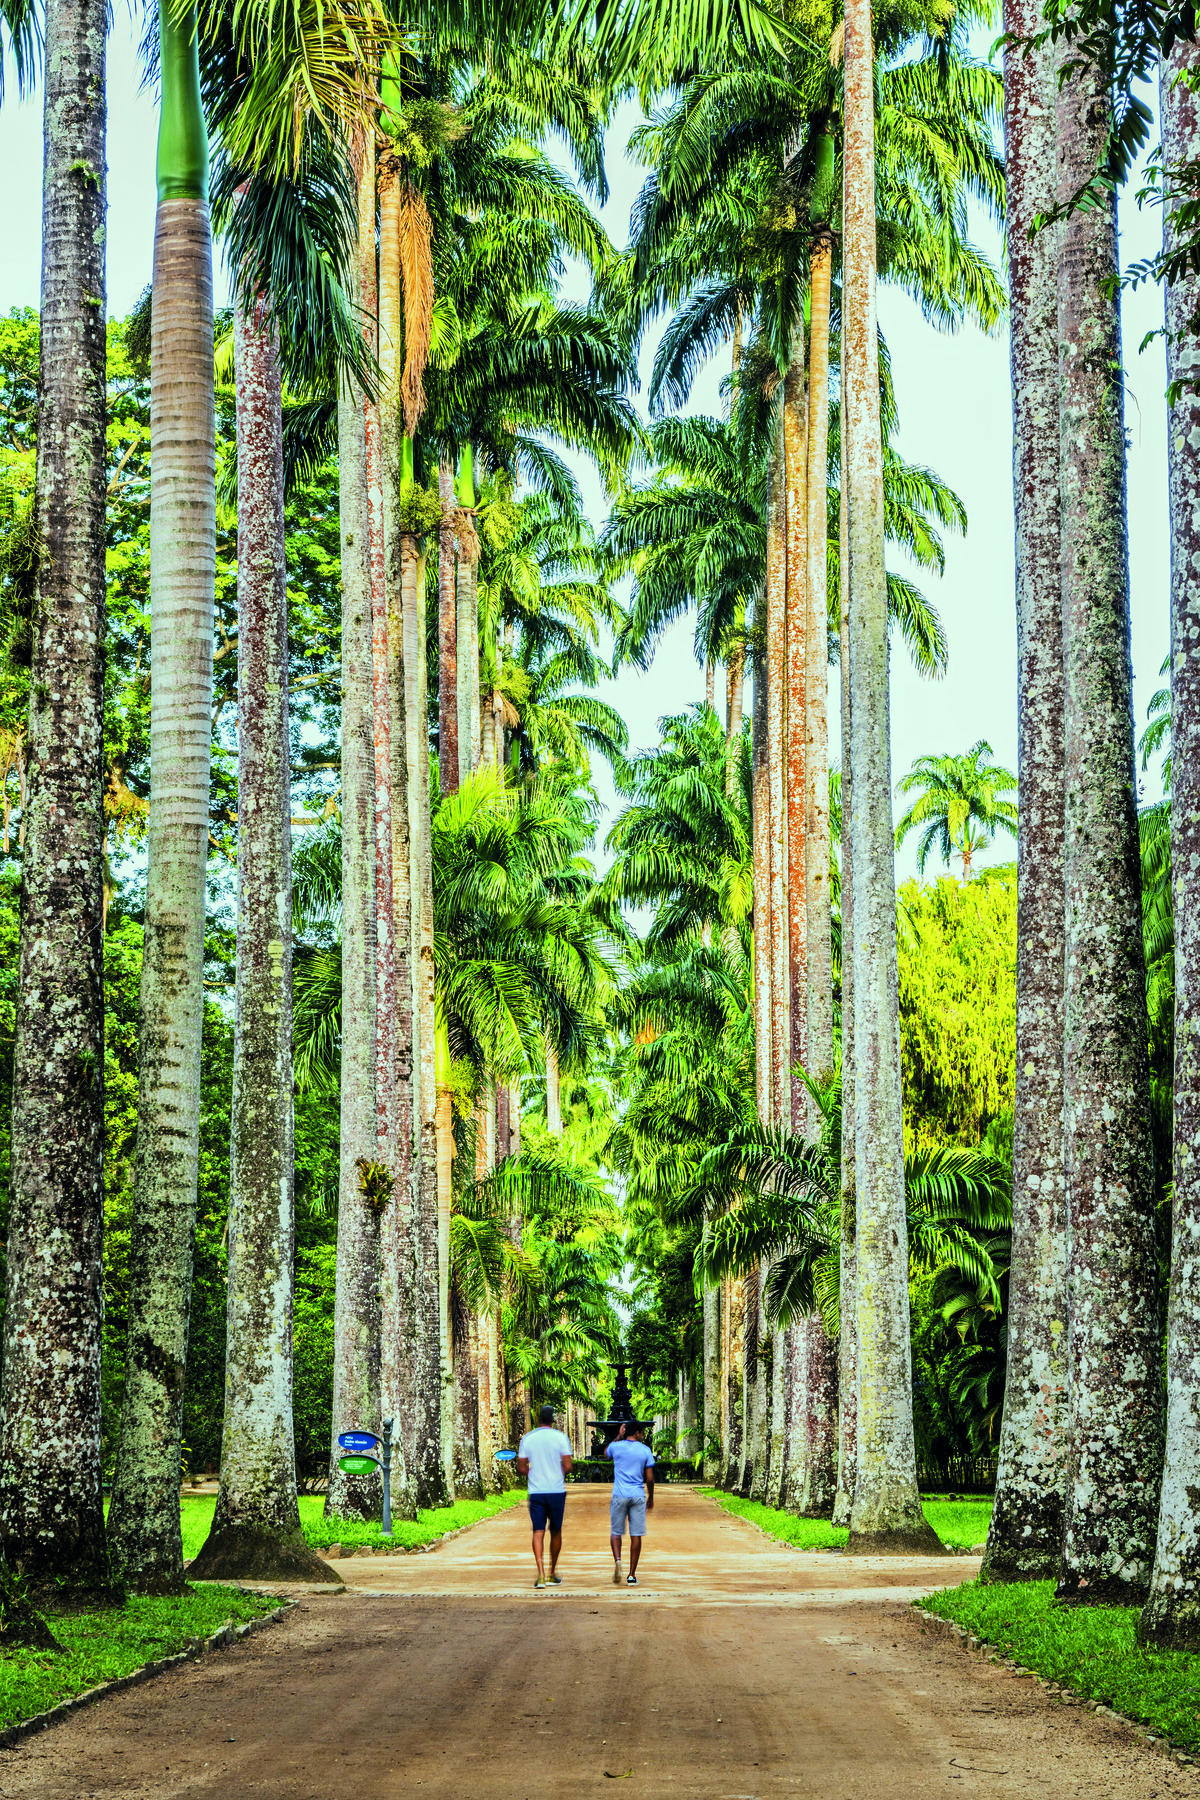 Fotografia. Imagem vertical de um ambiente arborizado. Rua de terra cercada de palmeiras muito altas. No caminho, retratados de costas, dois homens de bermuda e camiseta caminhando.